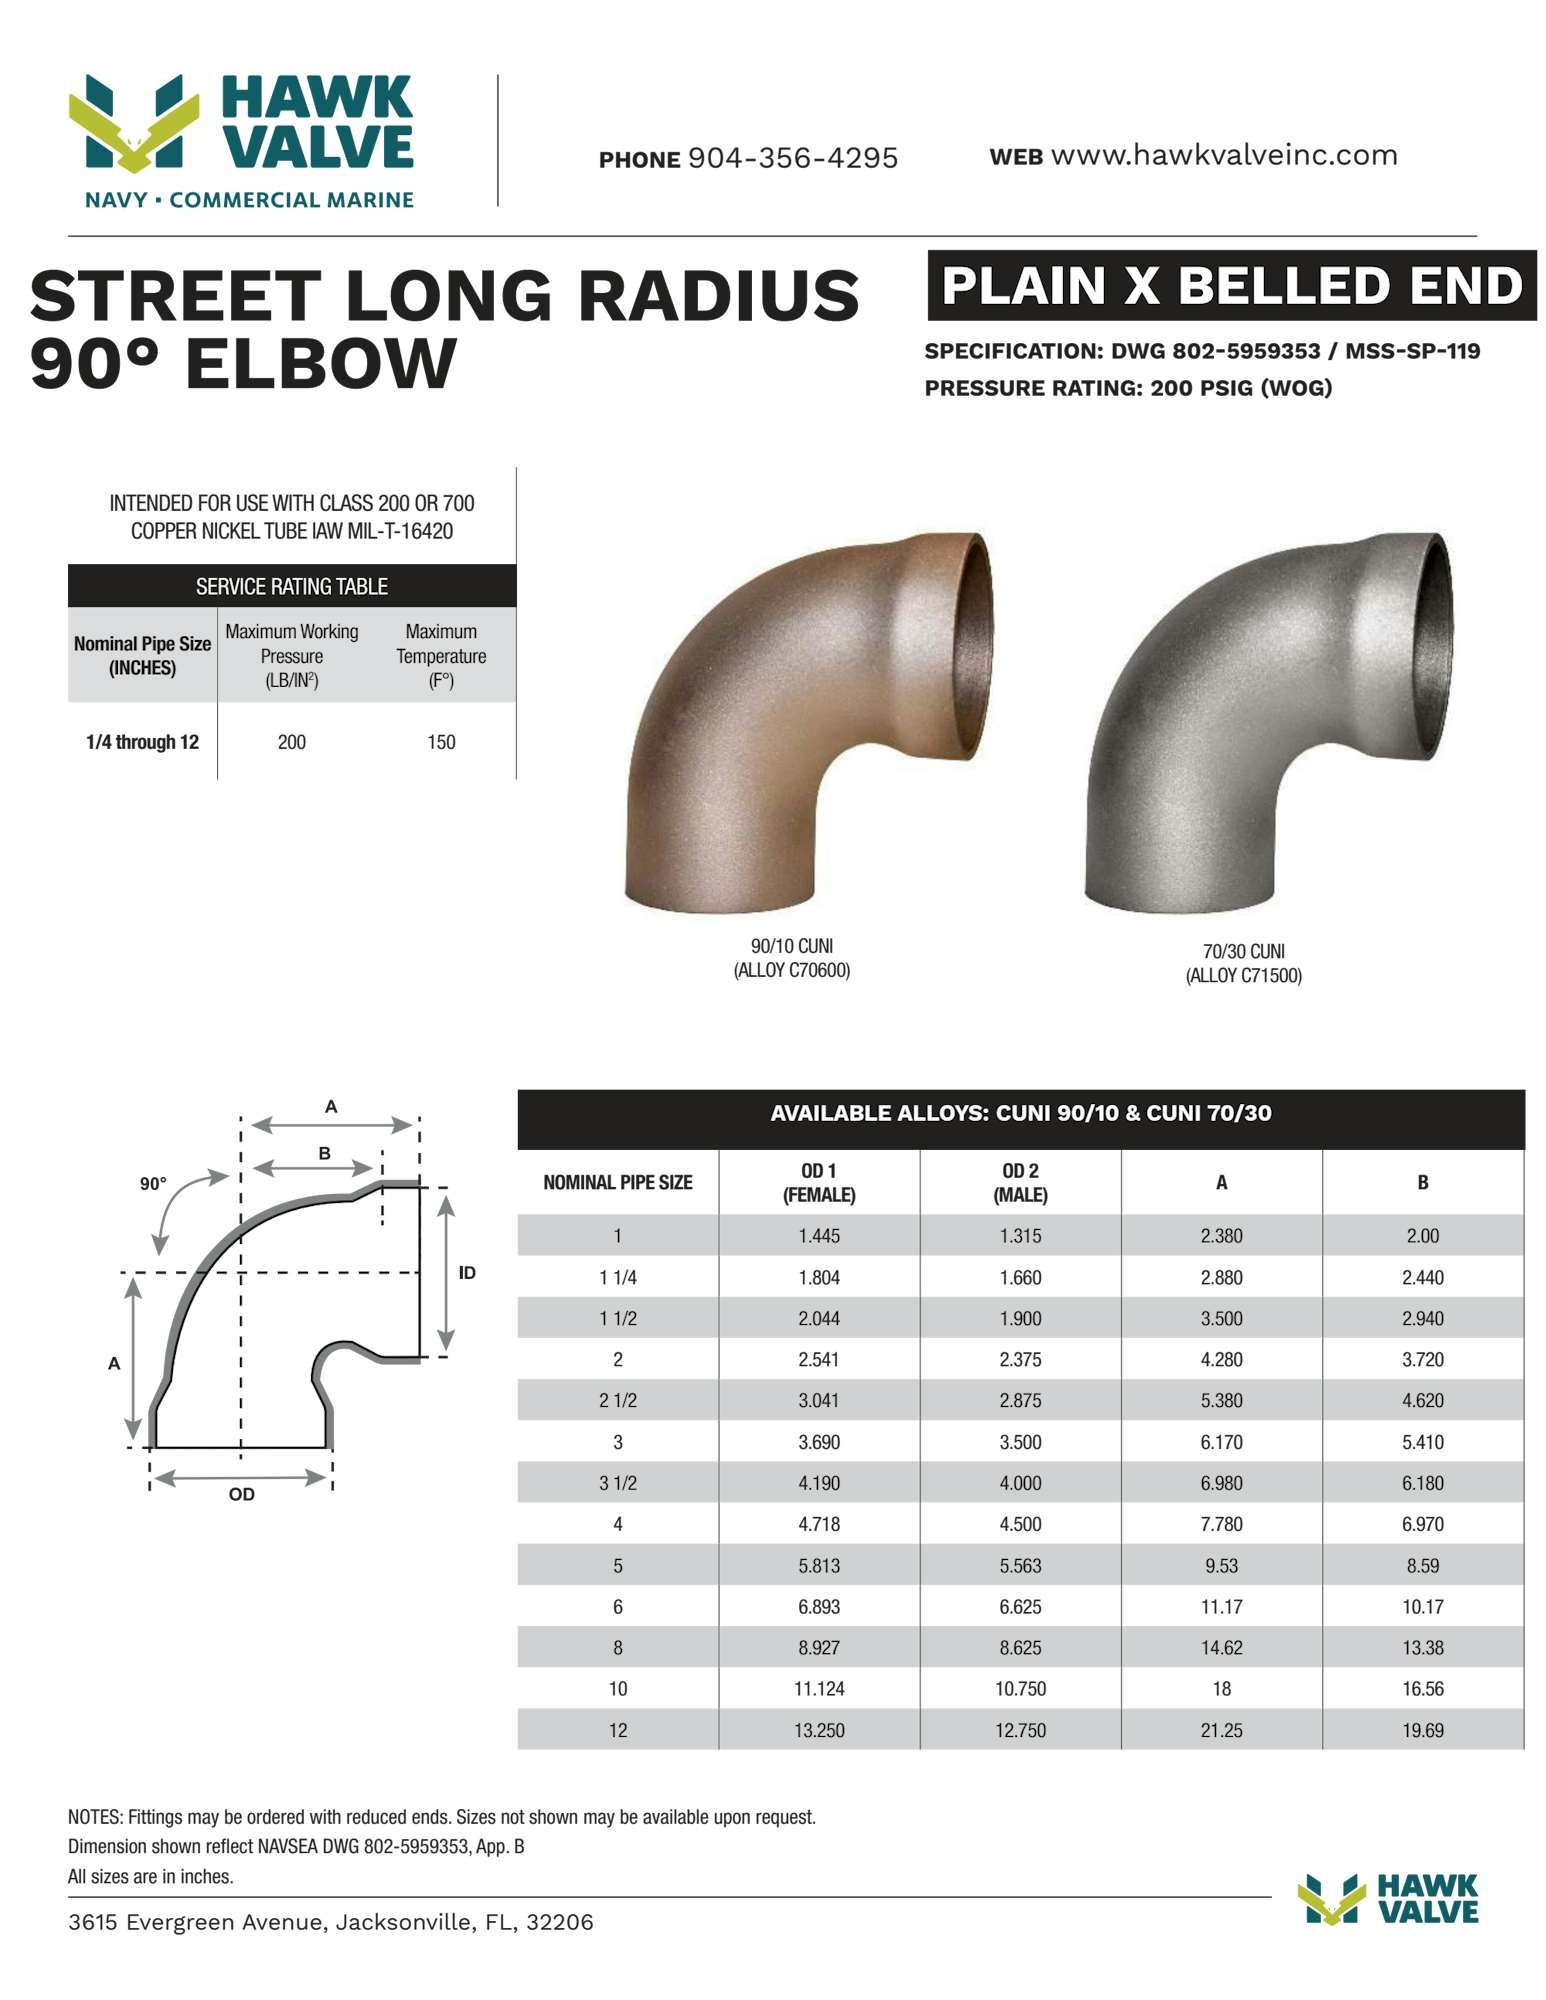 Belled-end-STLR-90.pdf